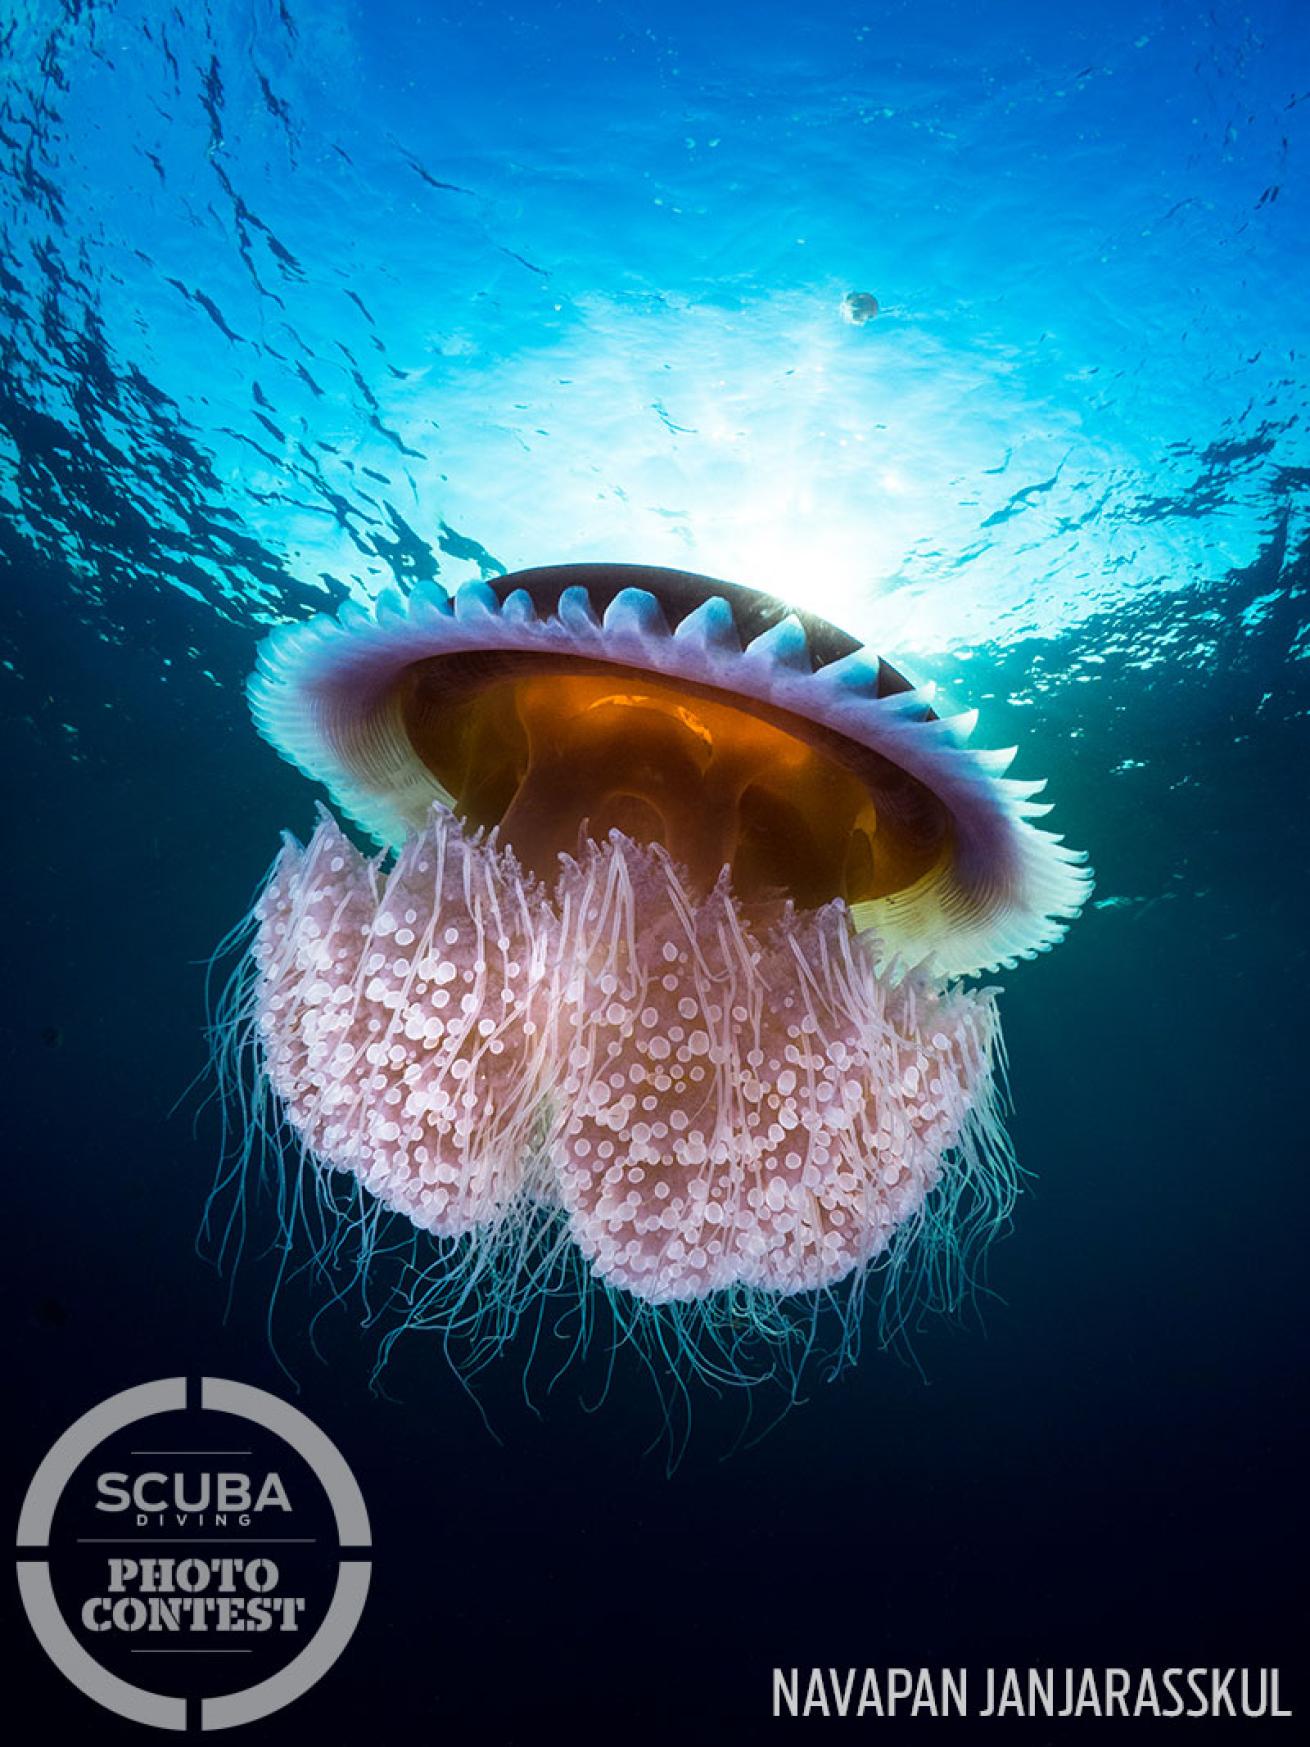 Jellyfish underwater photo